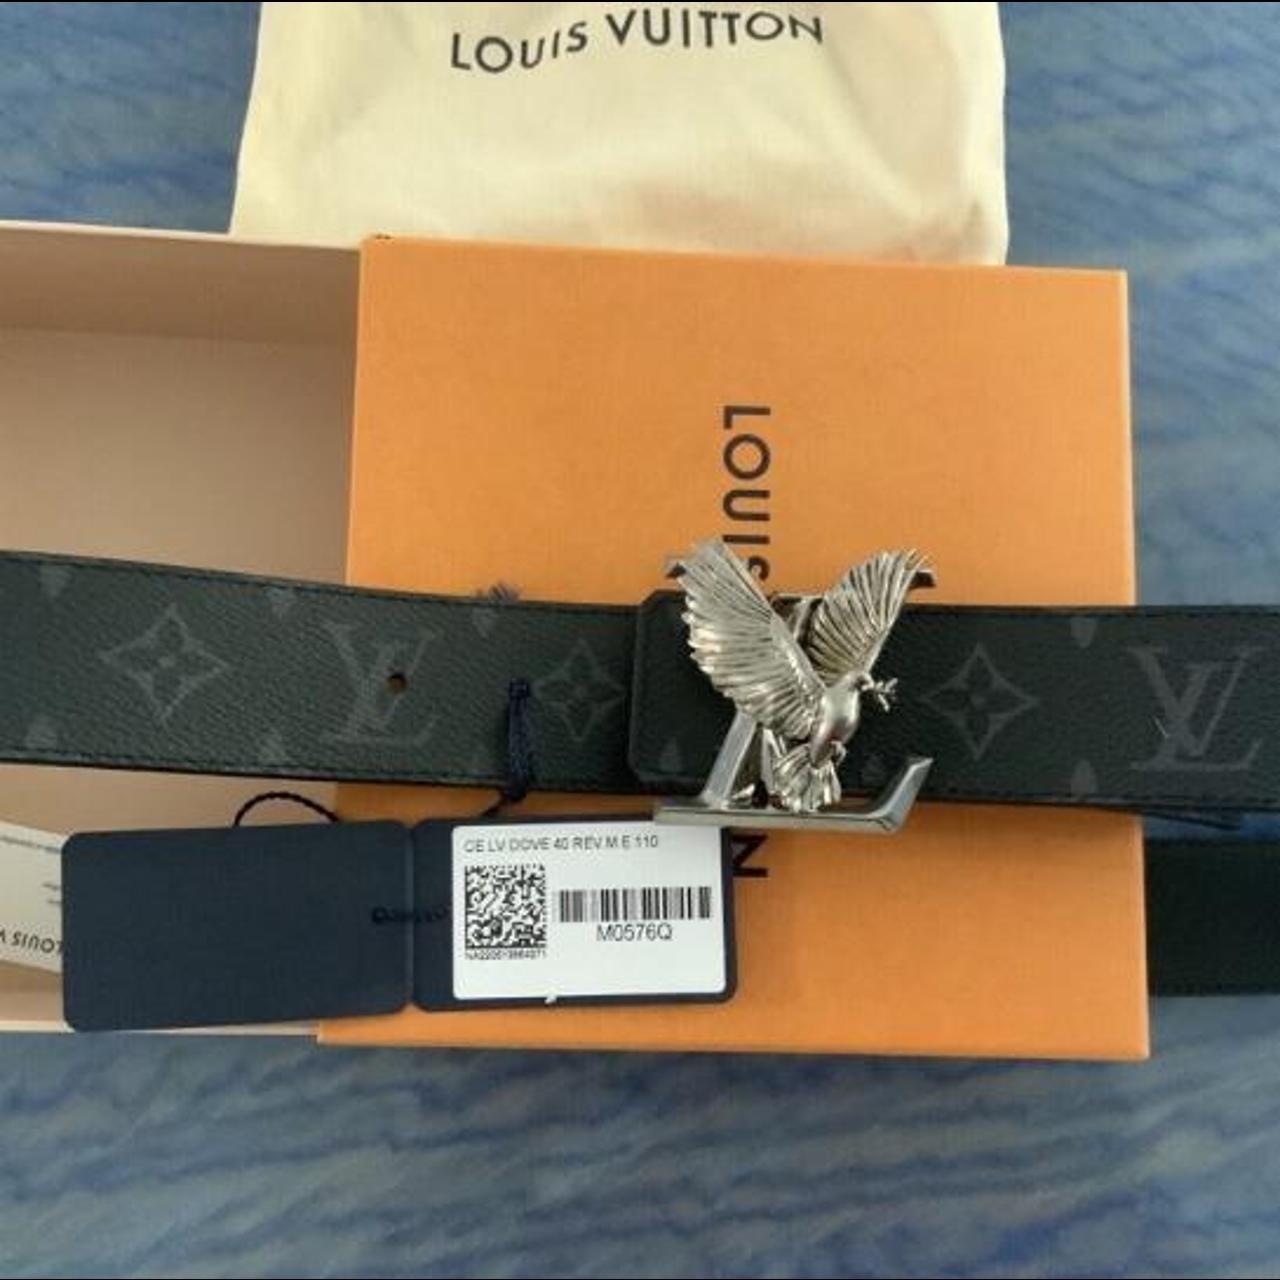 Louis vuitton belt size 100/40 in damier ebene - Depop